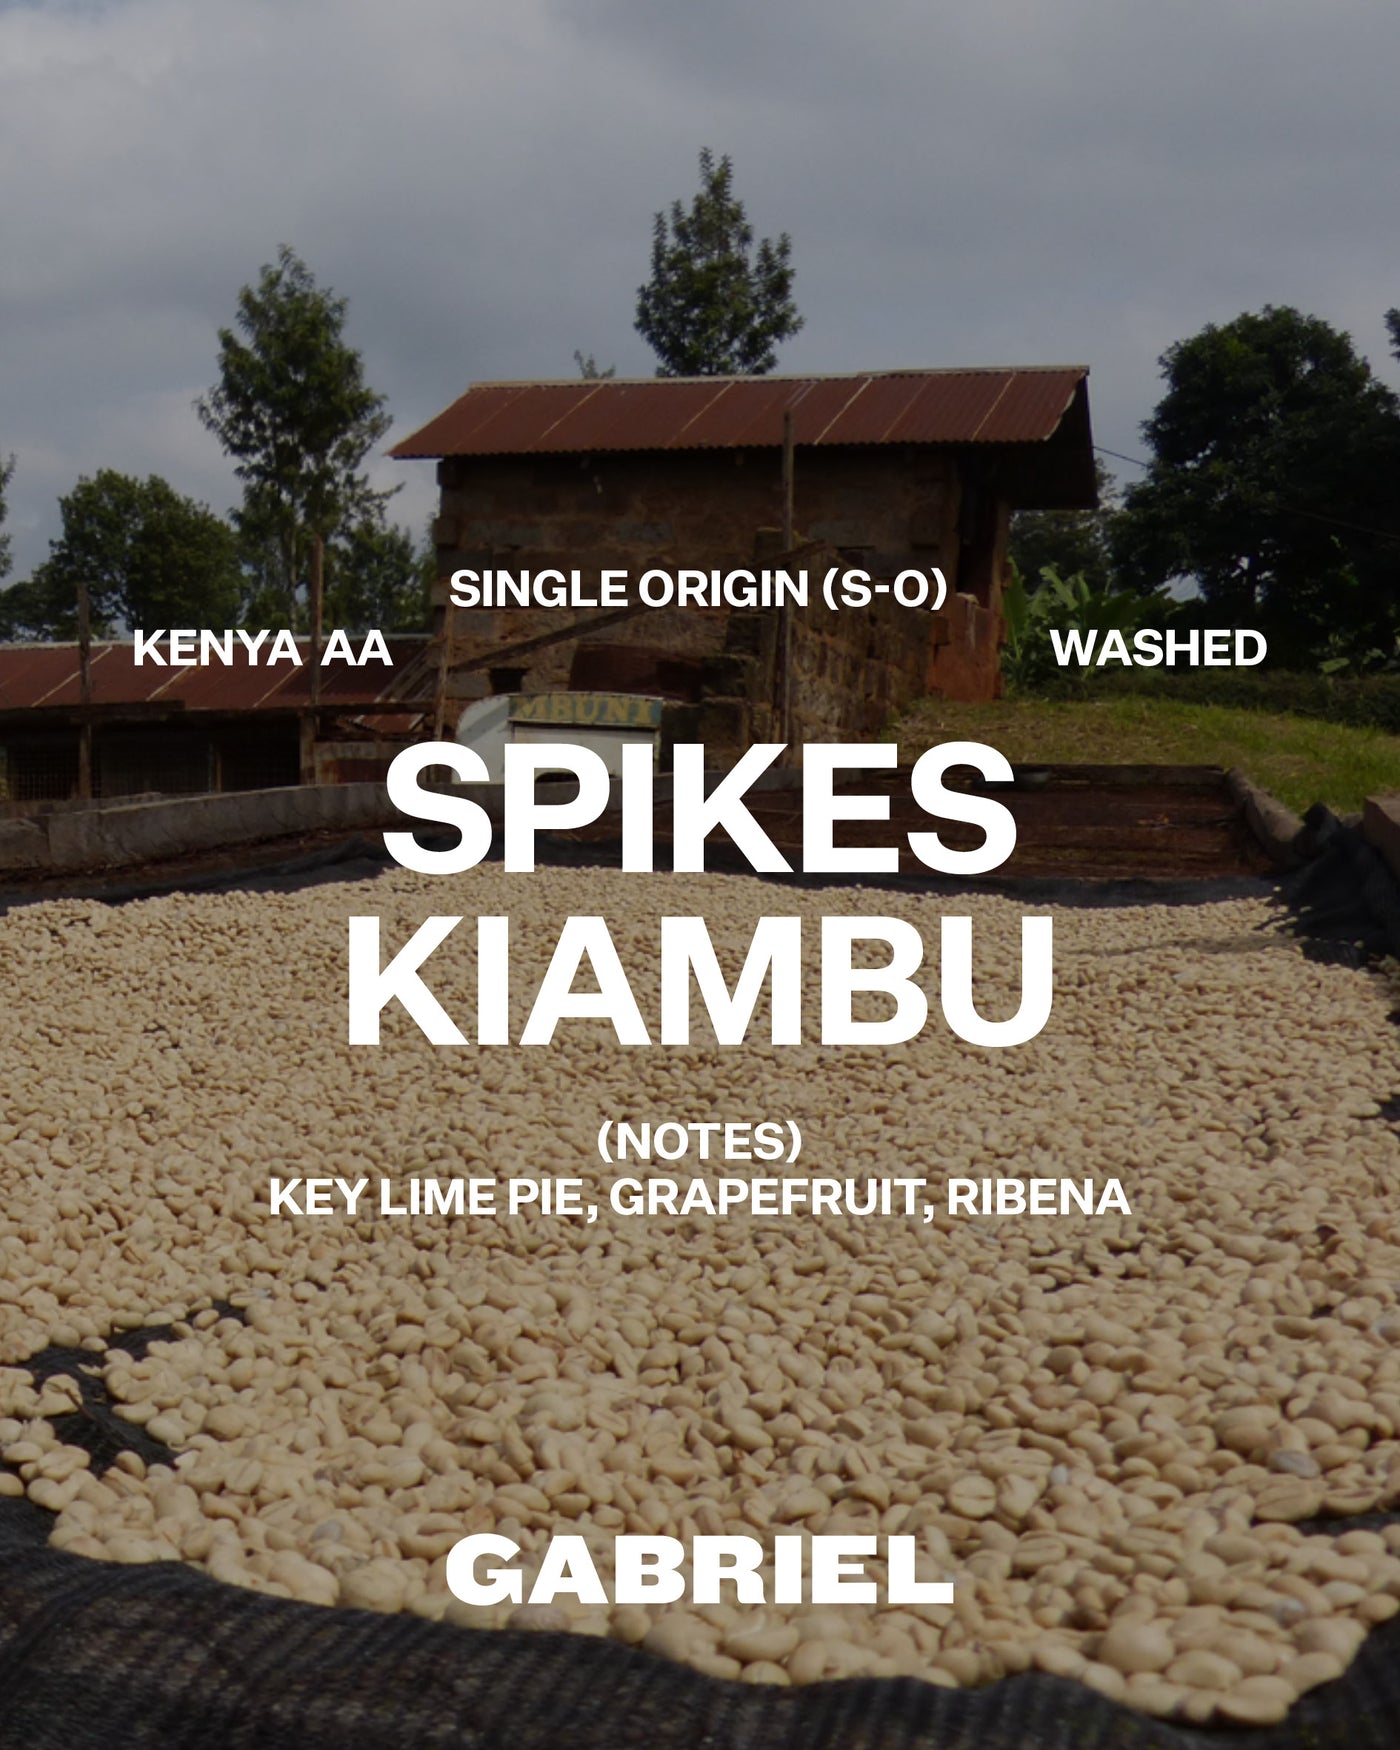 Spikes Kiambu, Kenya AA - Filter